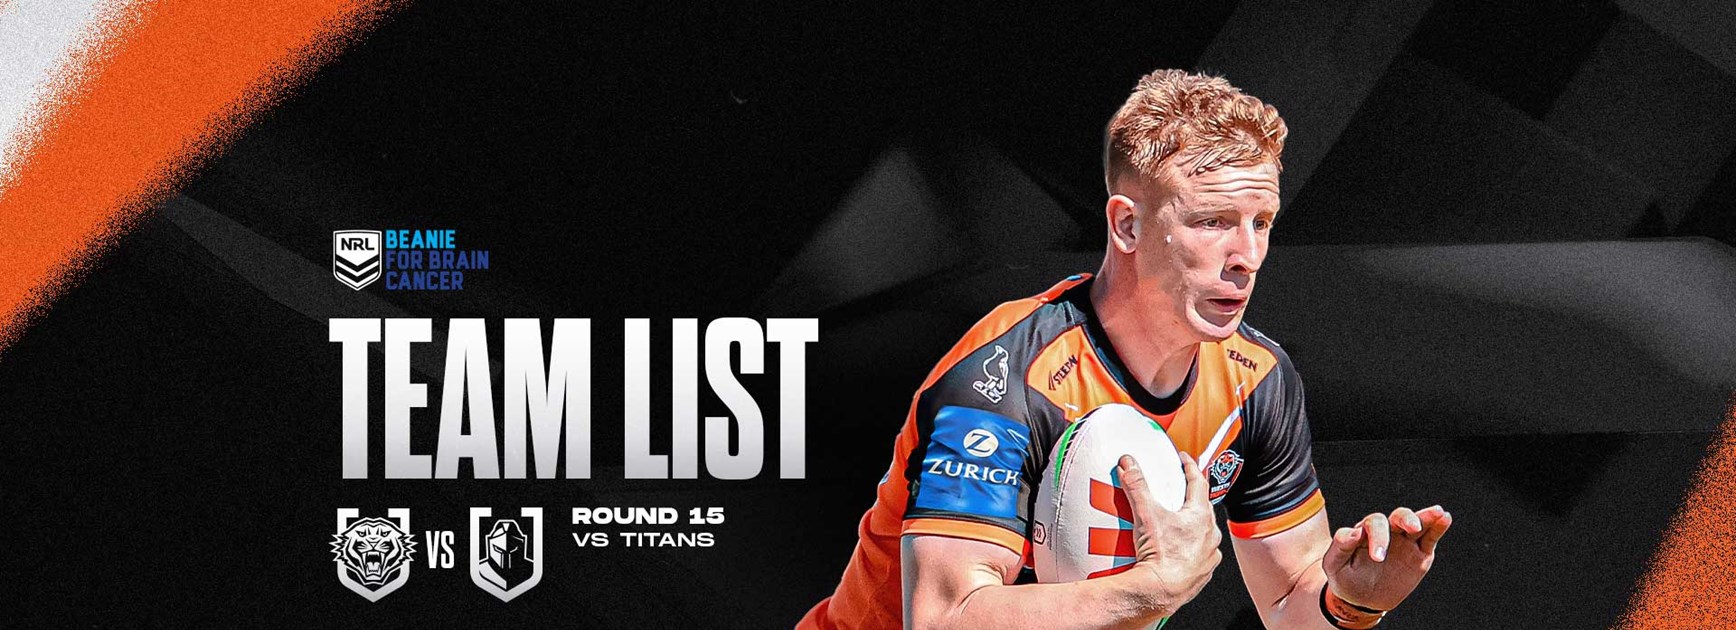 Team List: NRL Round 15 vs Titans